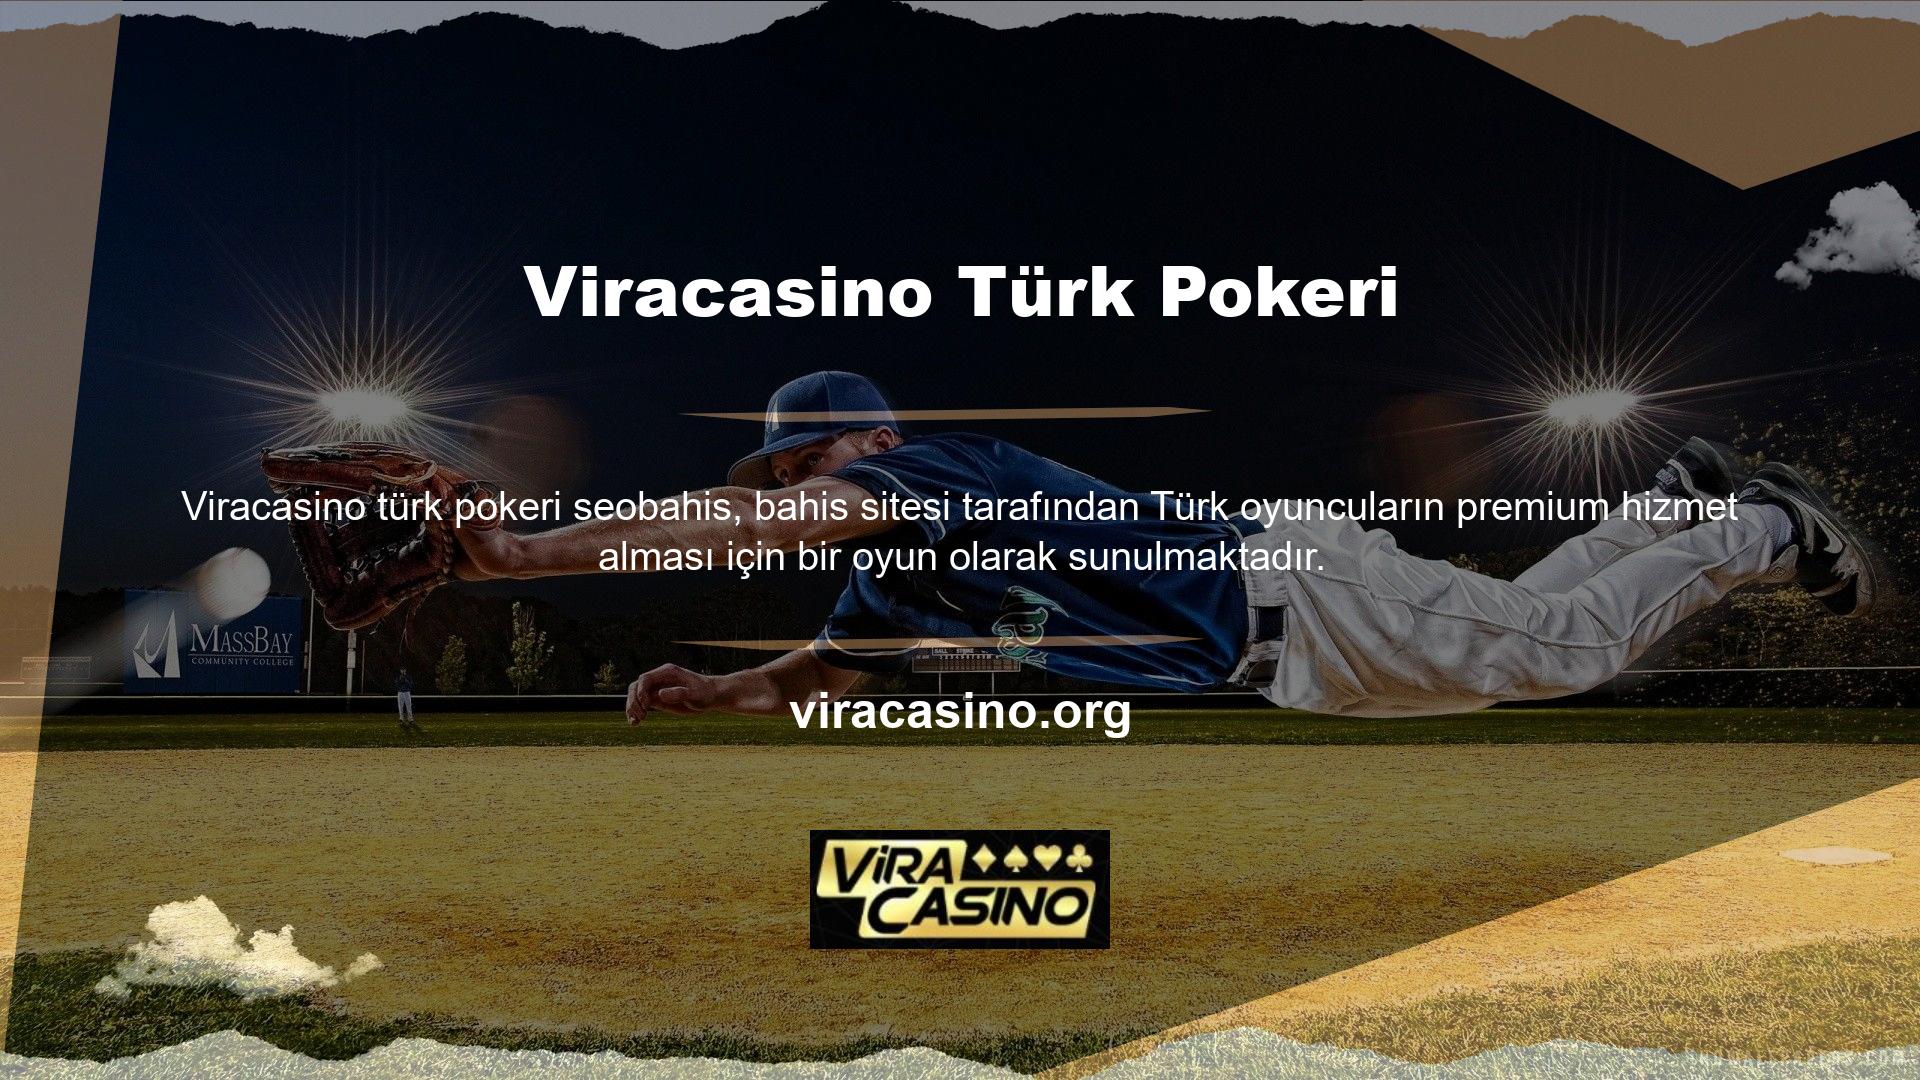 Aslında Türk pokeri, oyun sırasında oyunculara yardımcı olan bir oyun ustası anlamına gelir